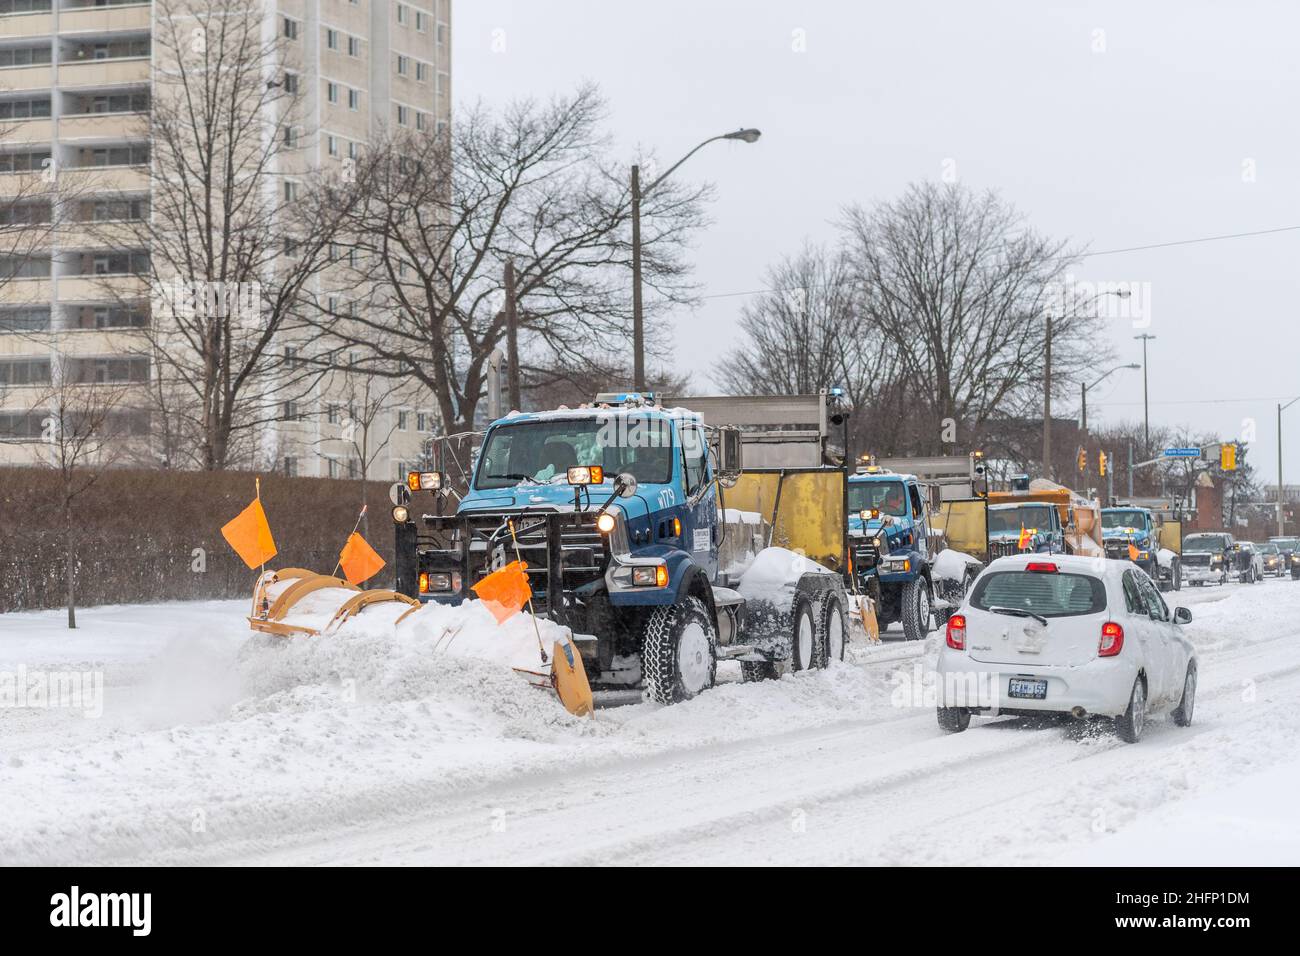 Une équipe de camions déneigement se trouve dans l'avenue Victoria Park lors d'une tempête de neige hivernale à Toronto, au Canada Banque D'Images